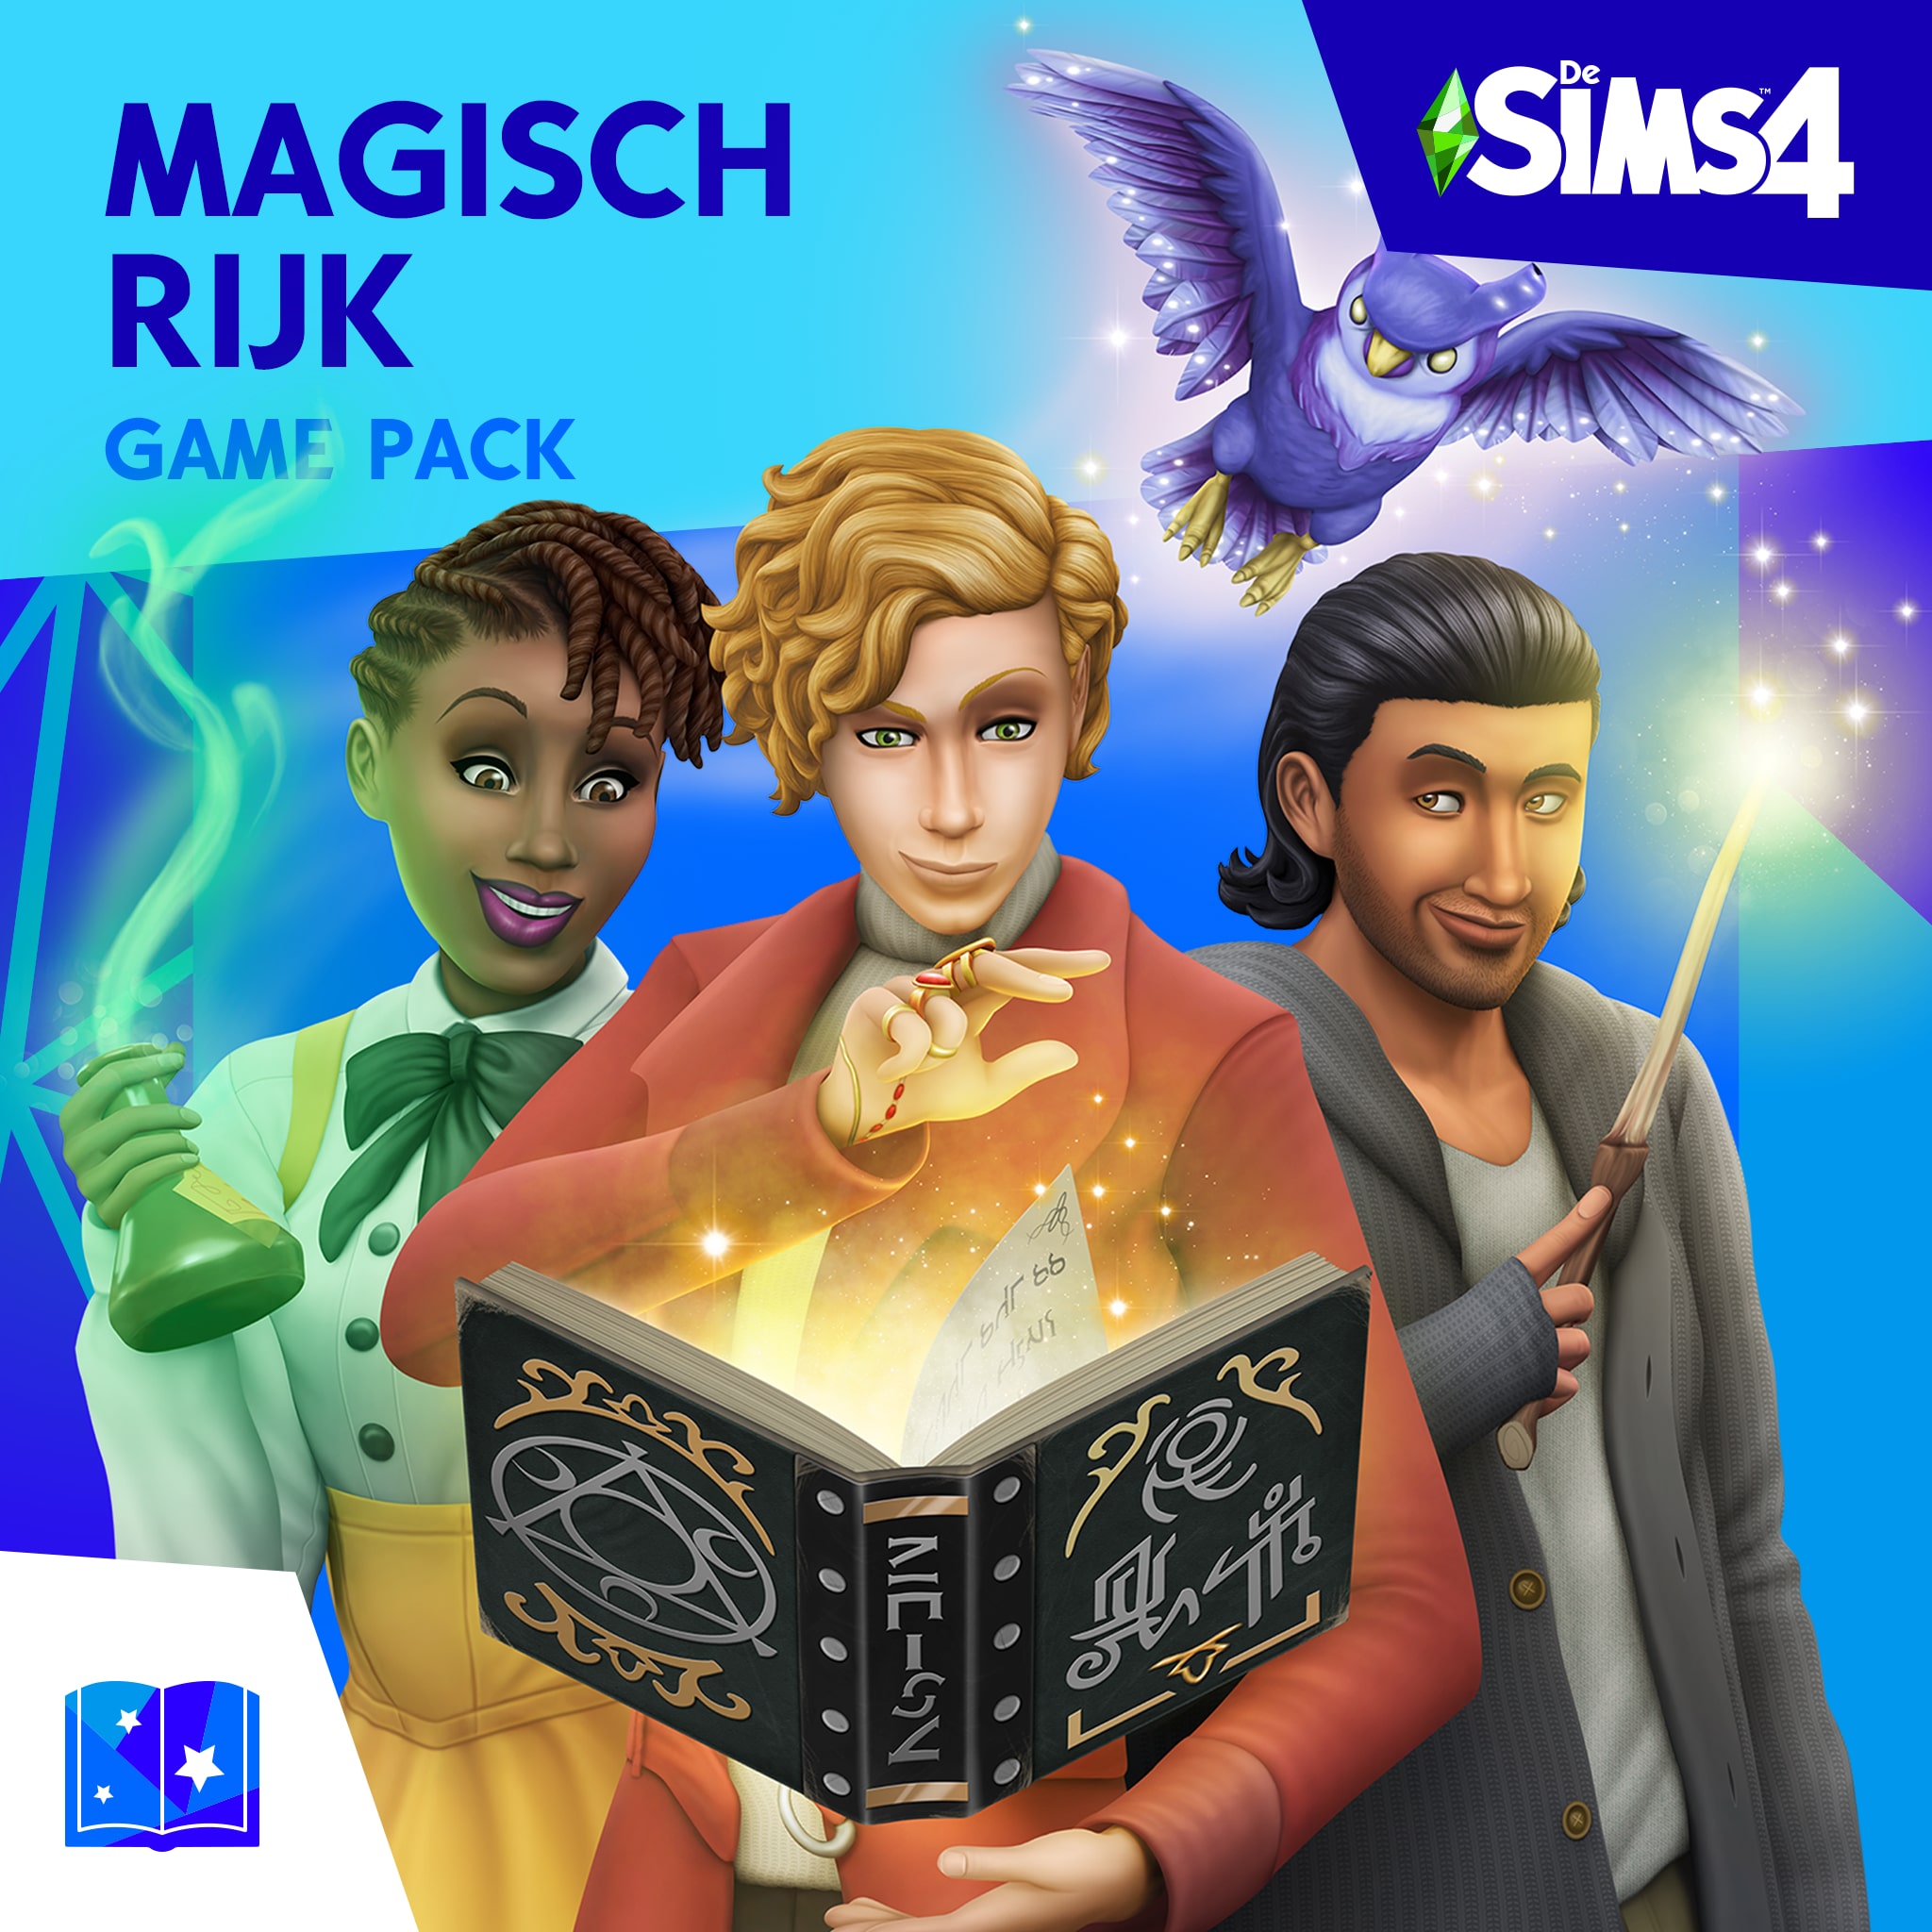 De Sims™ 4 Magisch Rijk